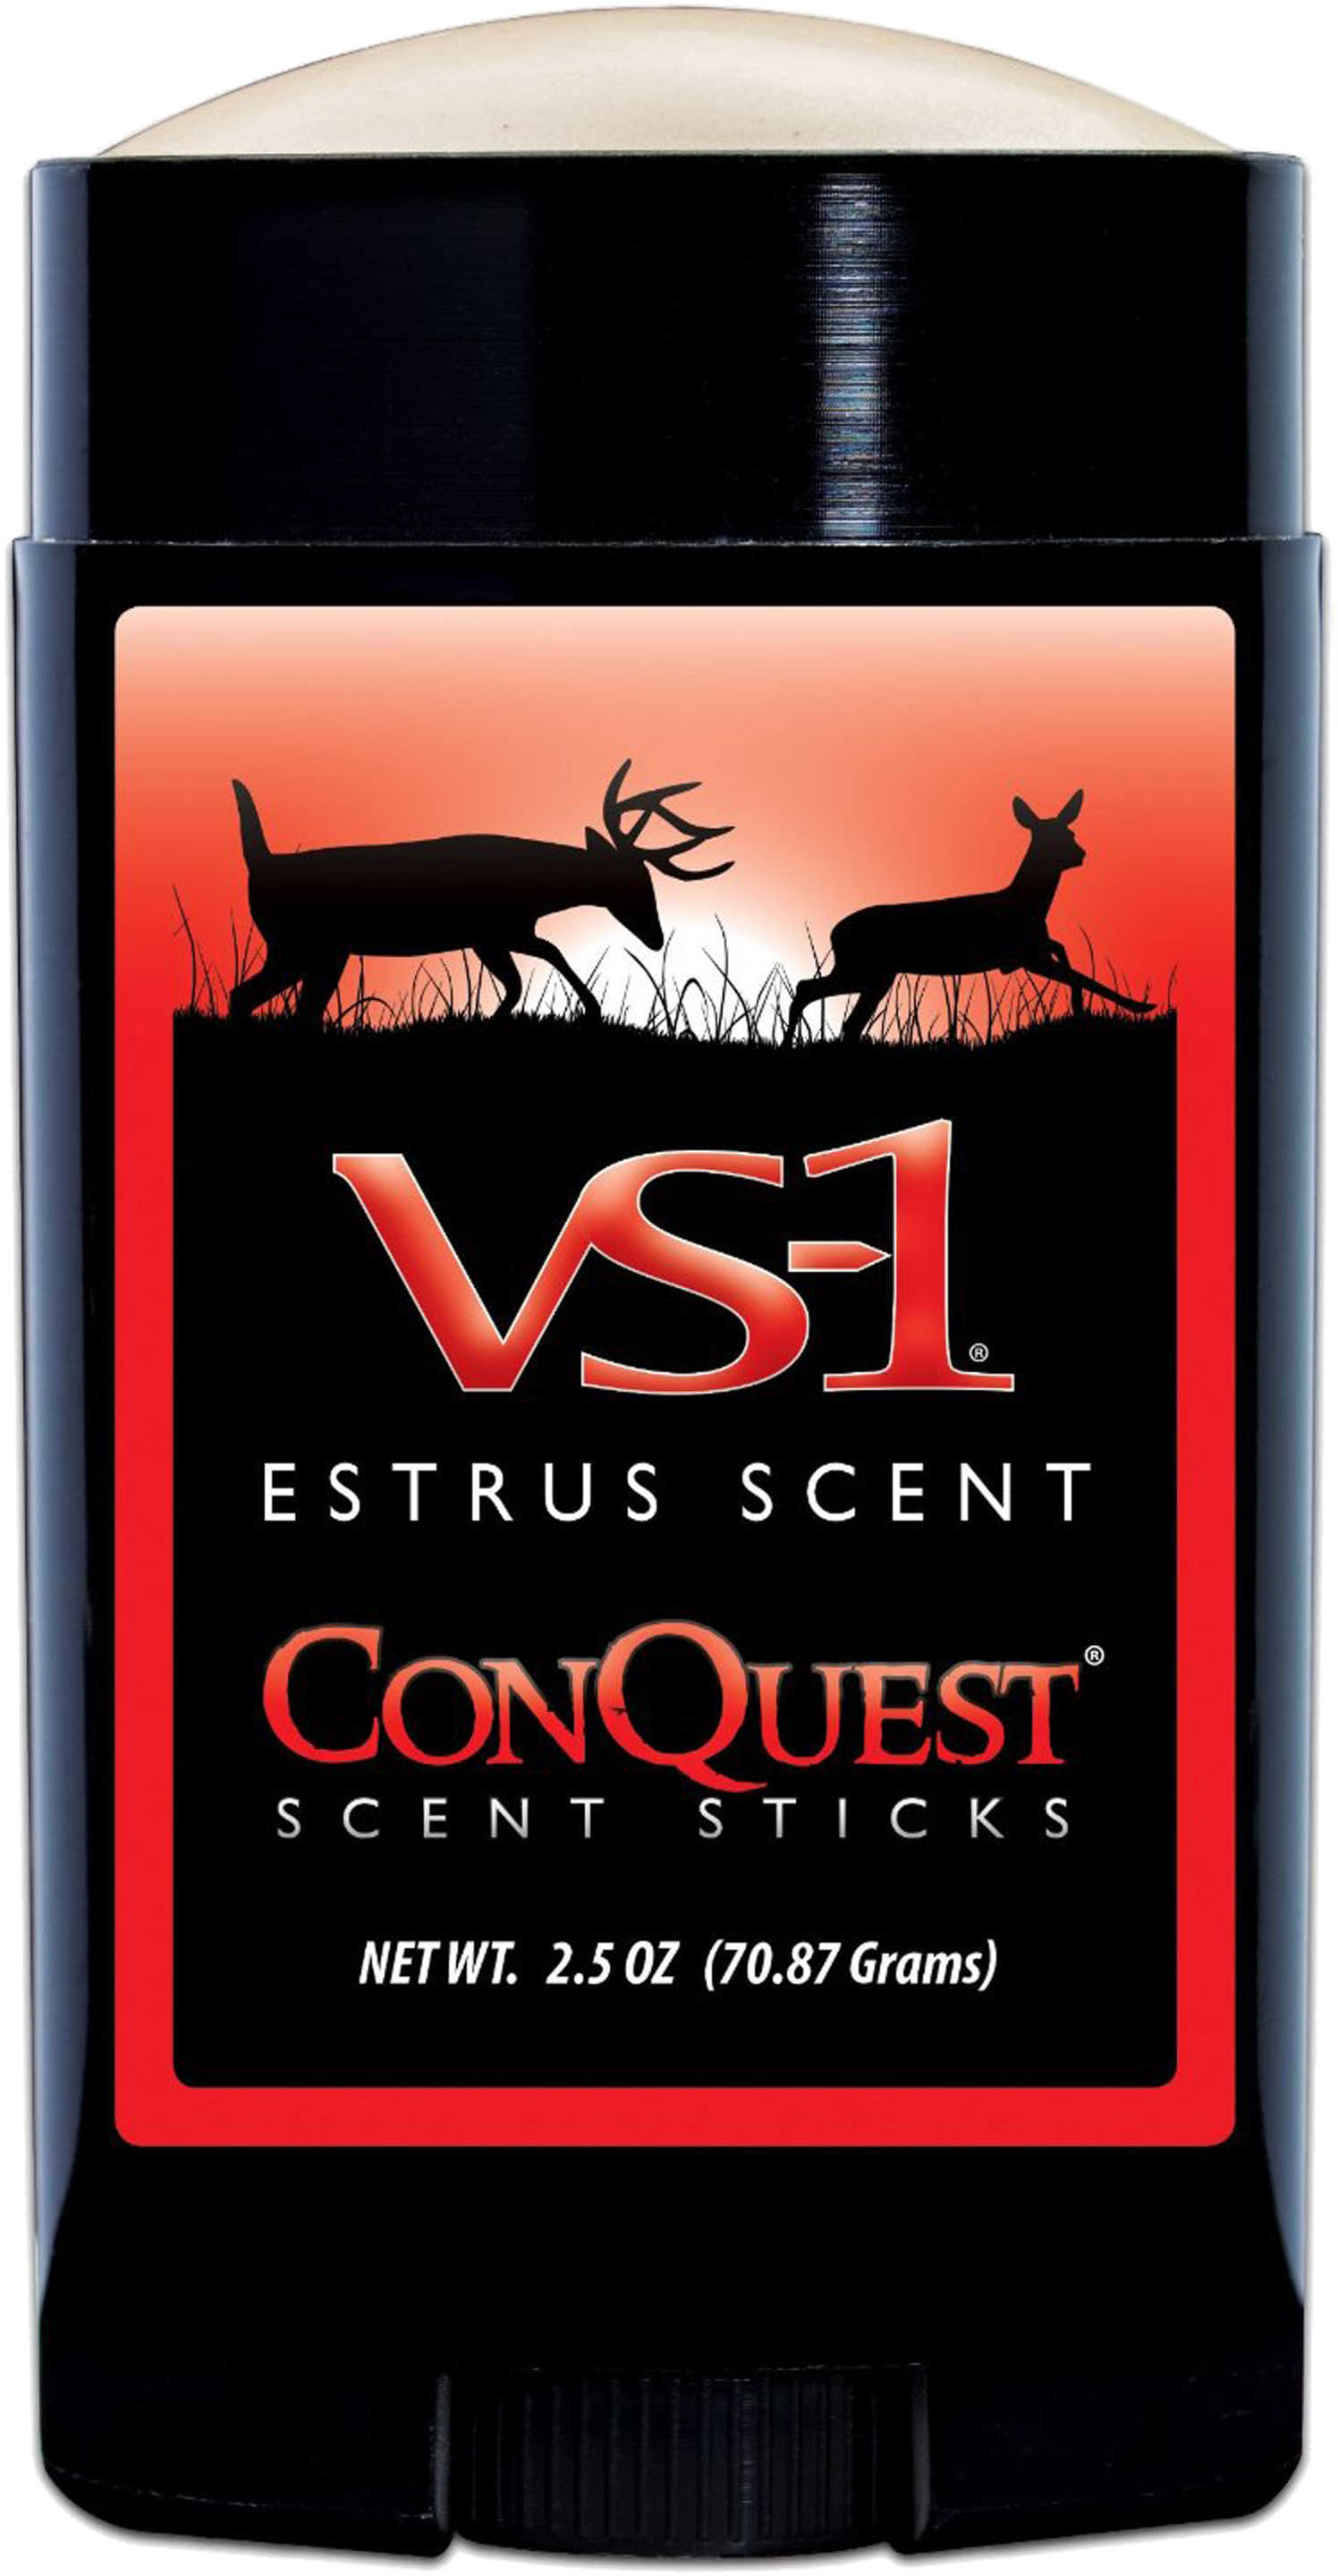 ConQuest VS-1 Scent Stick Model: 1202